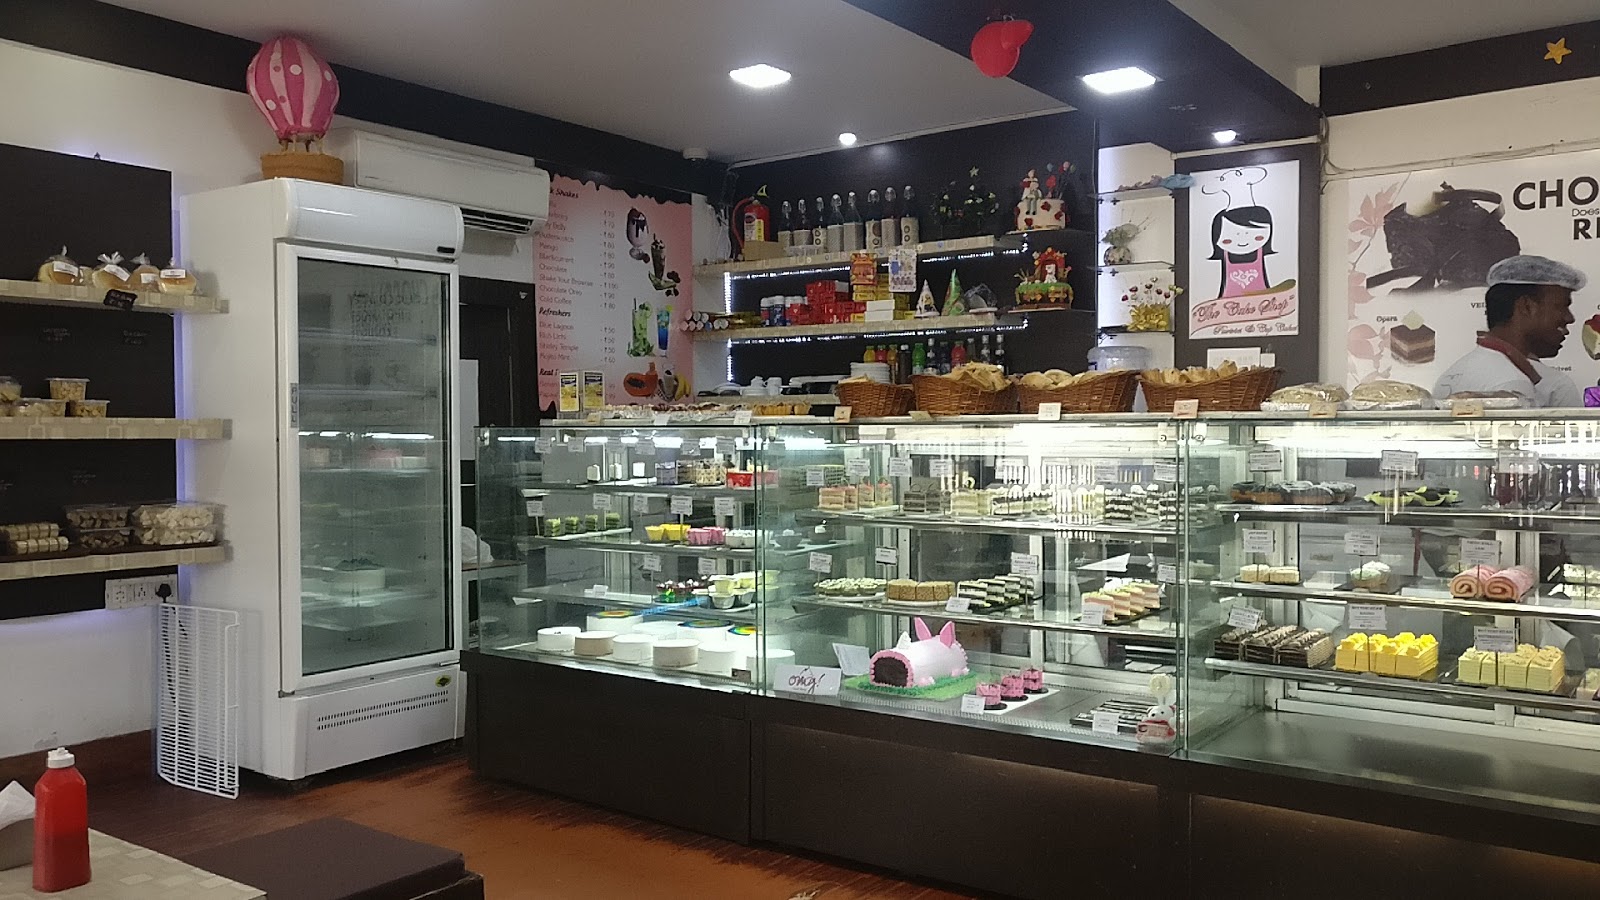 Kekiz The Cake Shop in Murlipura,Jaipur - Best Cake Shops in Jaipur -  Justdial